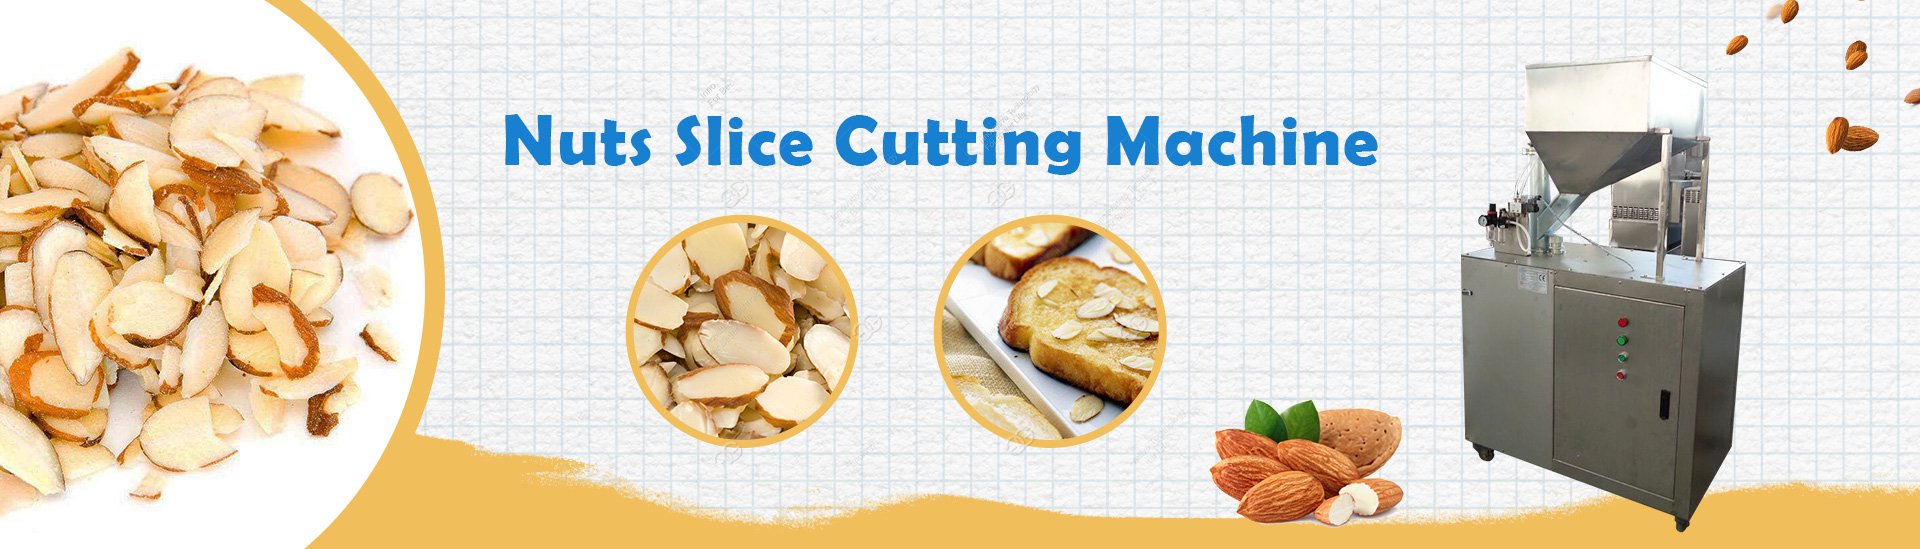 Nuts Slice Cutting Machine